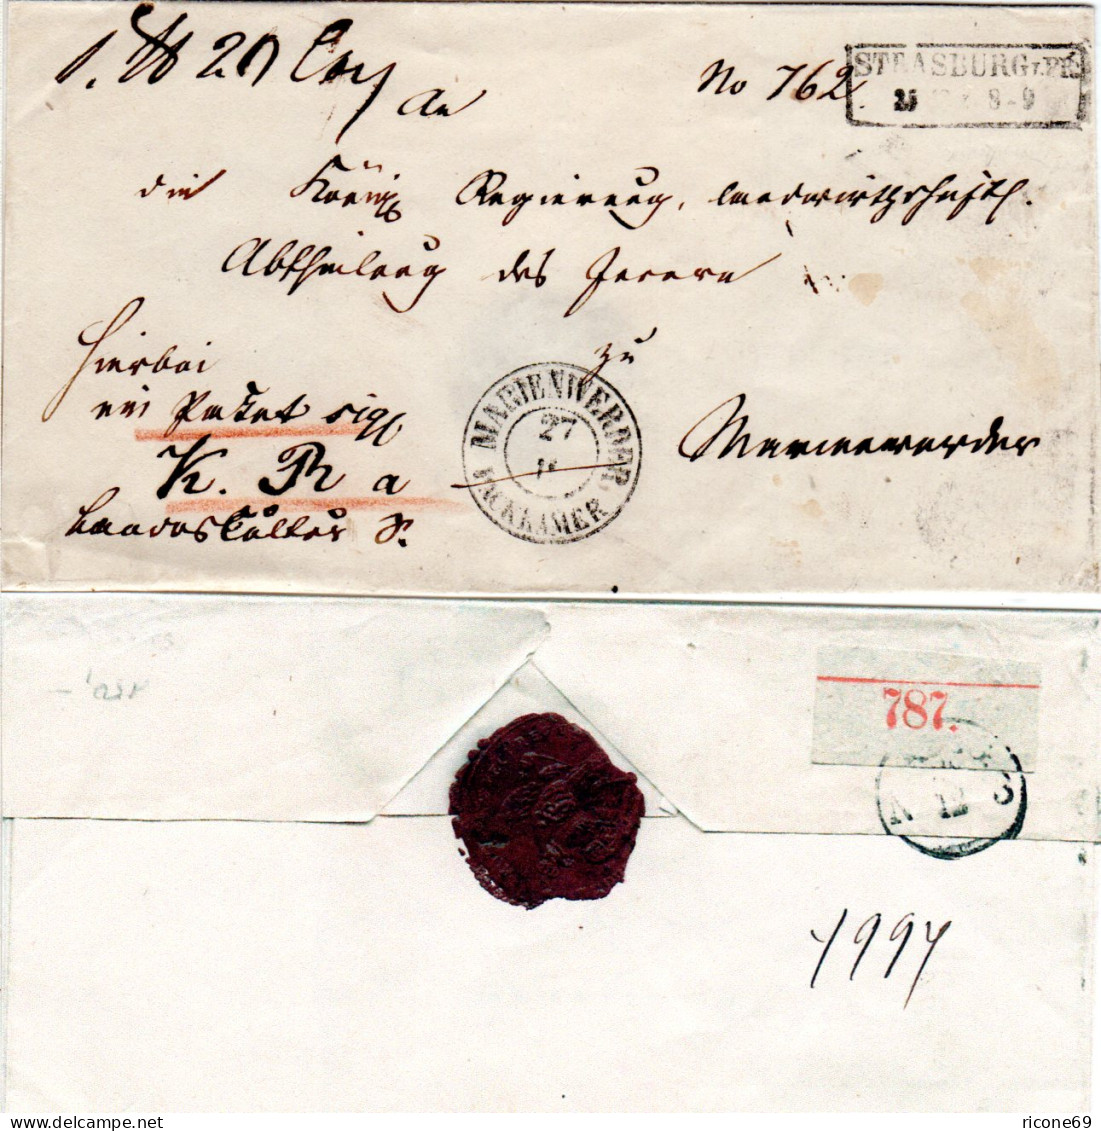 Preussen, K2 MARIENWERDER PACKKAMER Auf Brief V. R2 STRASBURG I.PR. M. Rs. Label - Lettres & Documents